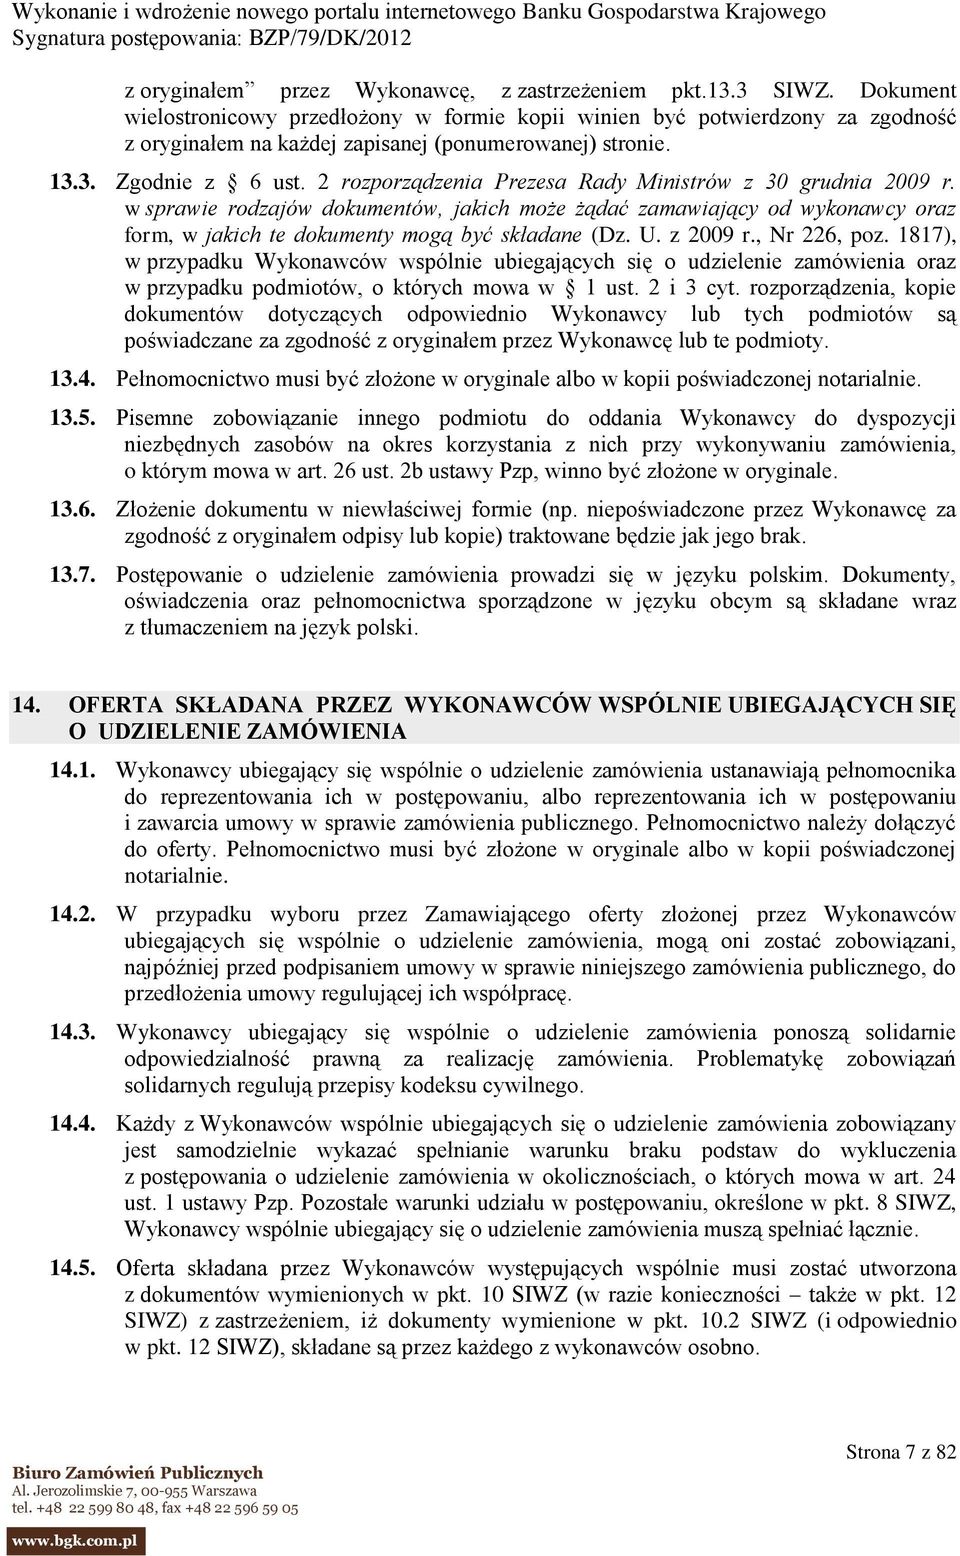 2 rozporządzenia Prezesa Rady Ministrów z 30 grudnia 2009 r. w sprawie rodzajów dokumentów, jakich może żądać zamawiający od wykonawcy oraz form, w jakich te dokumenty mogą być składane (Dz. U.